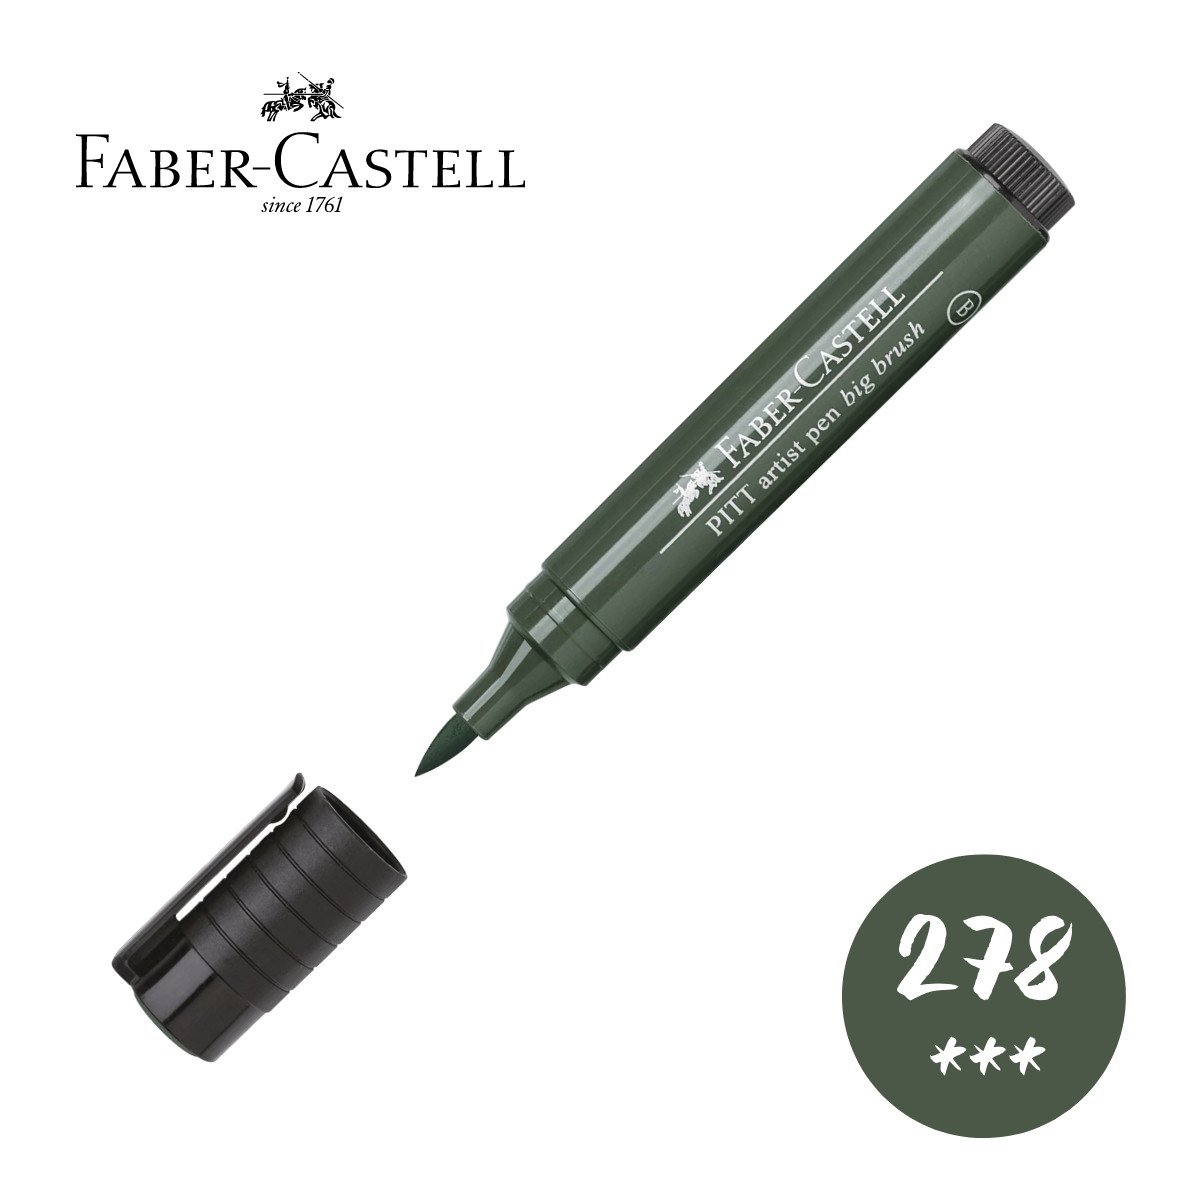 Faber Castell Pitt Artist Pen Big Brush Marker 278 Chrome Oxide Green